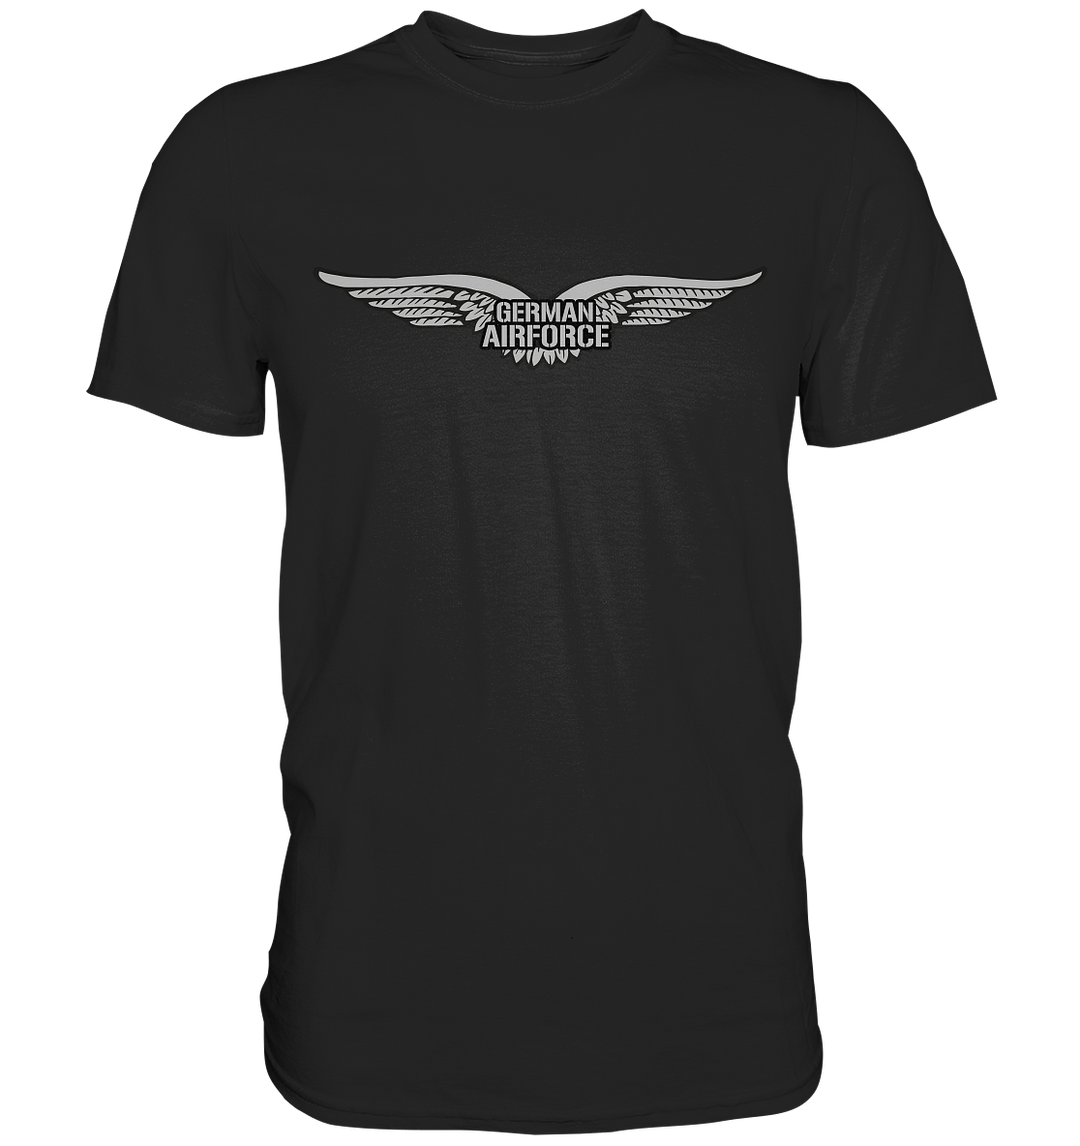 German Airforce - Premium Shirt